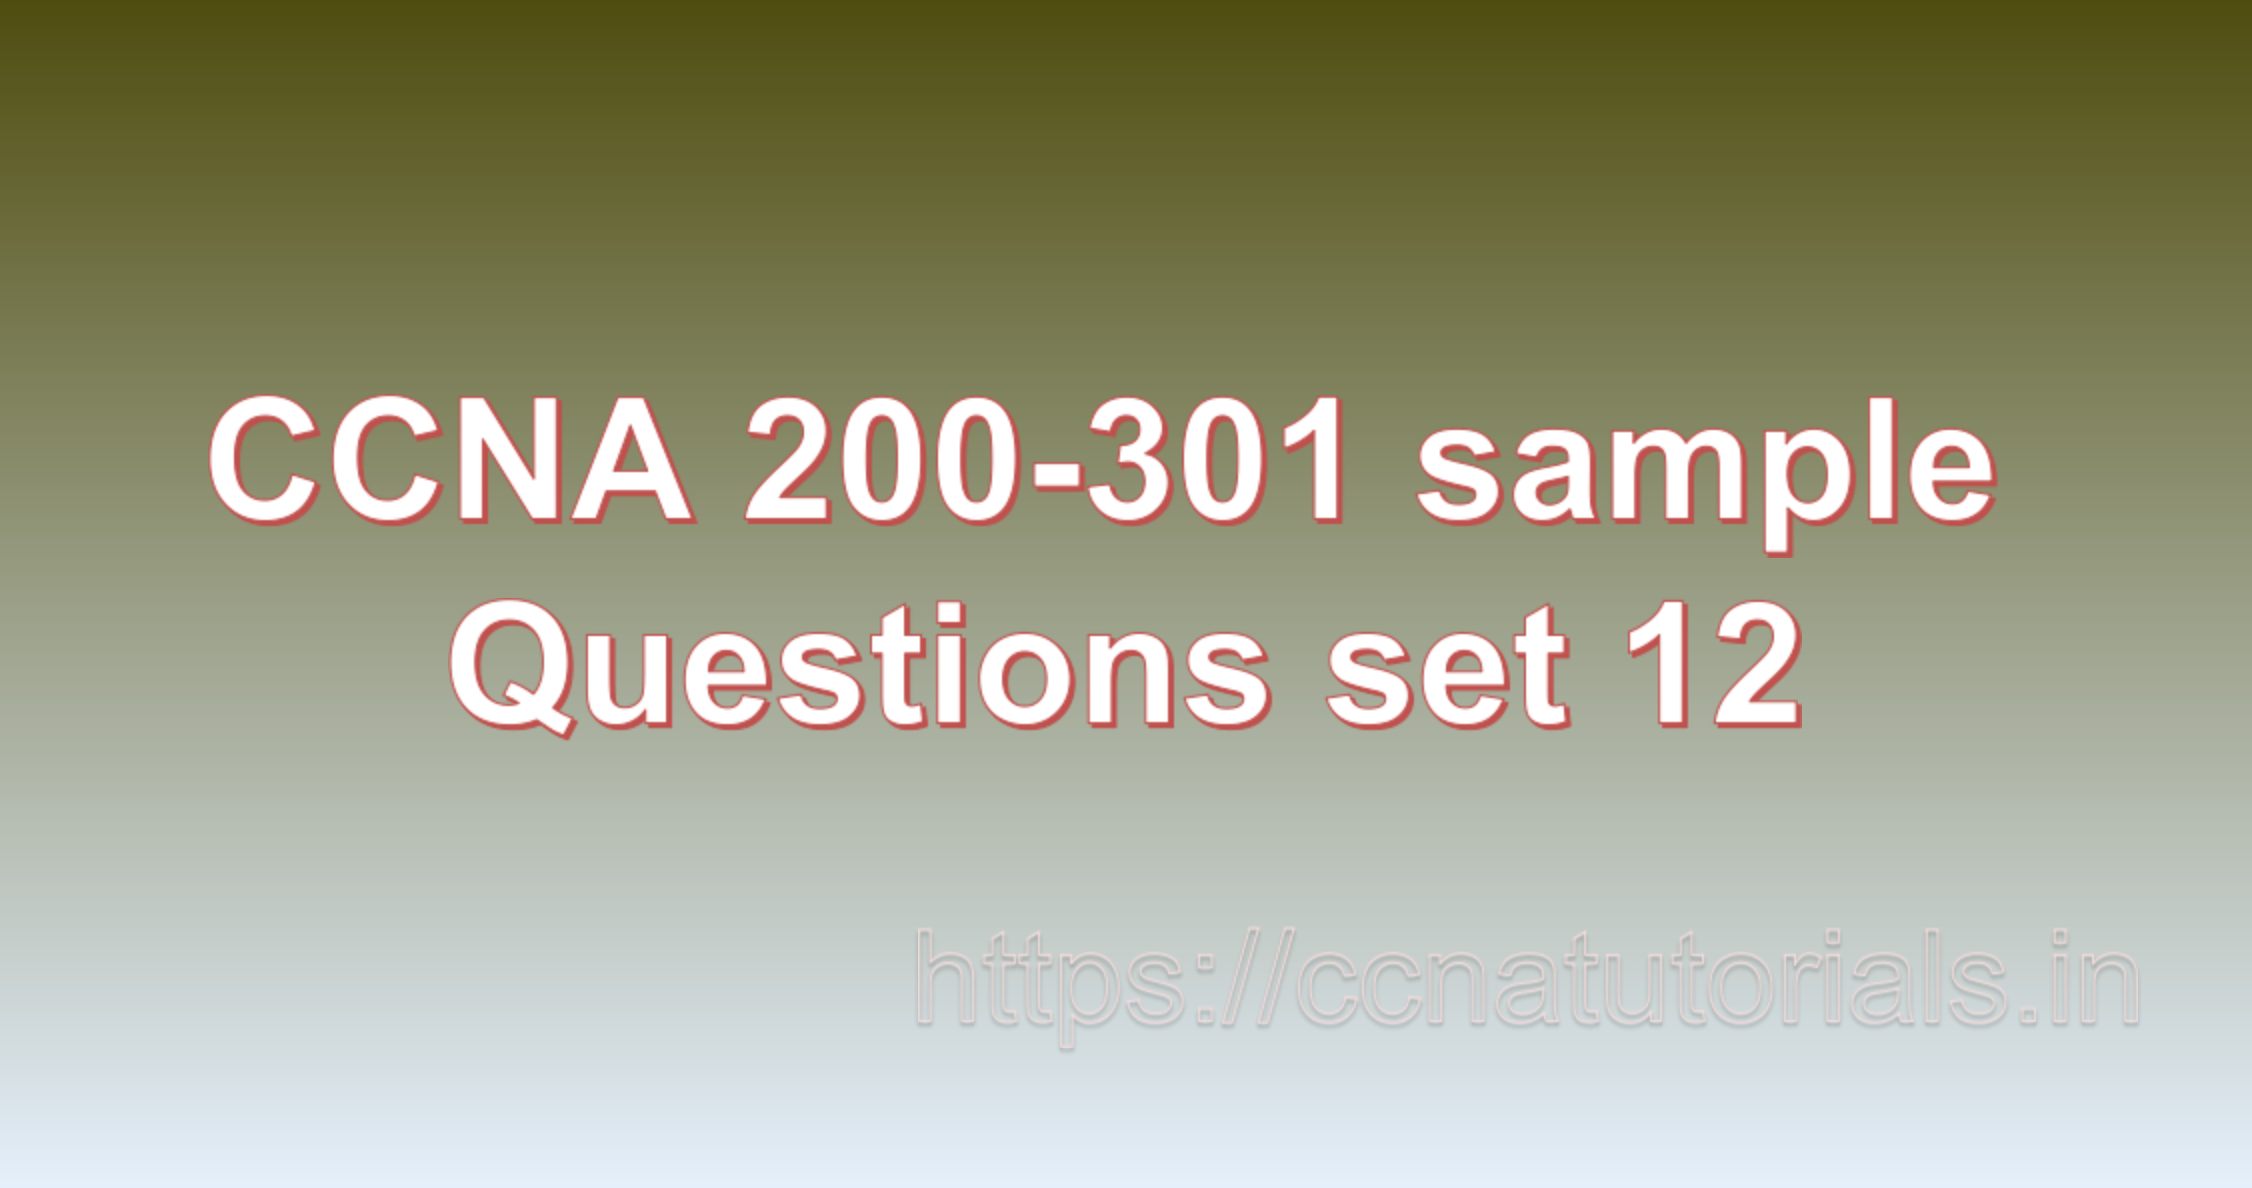 ccna sample questions set 12, ccna tutorials, CCNA Exam, ccna